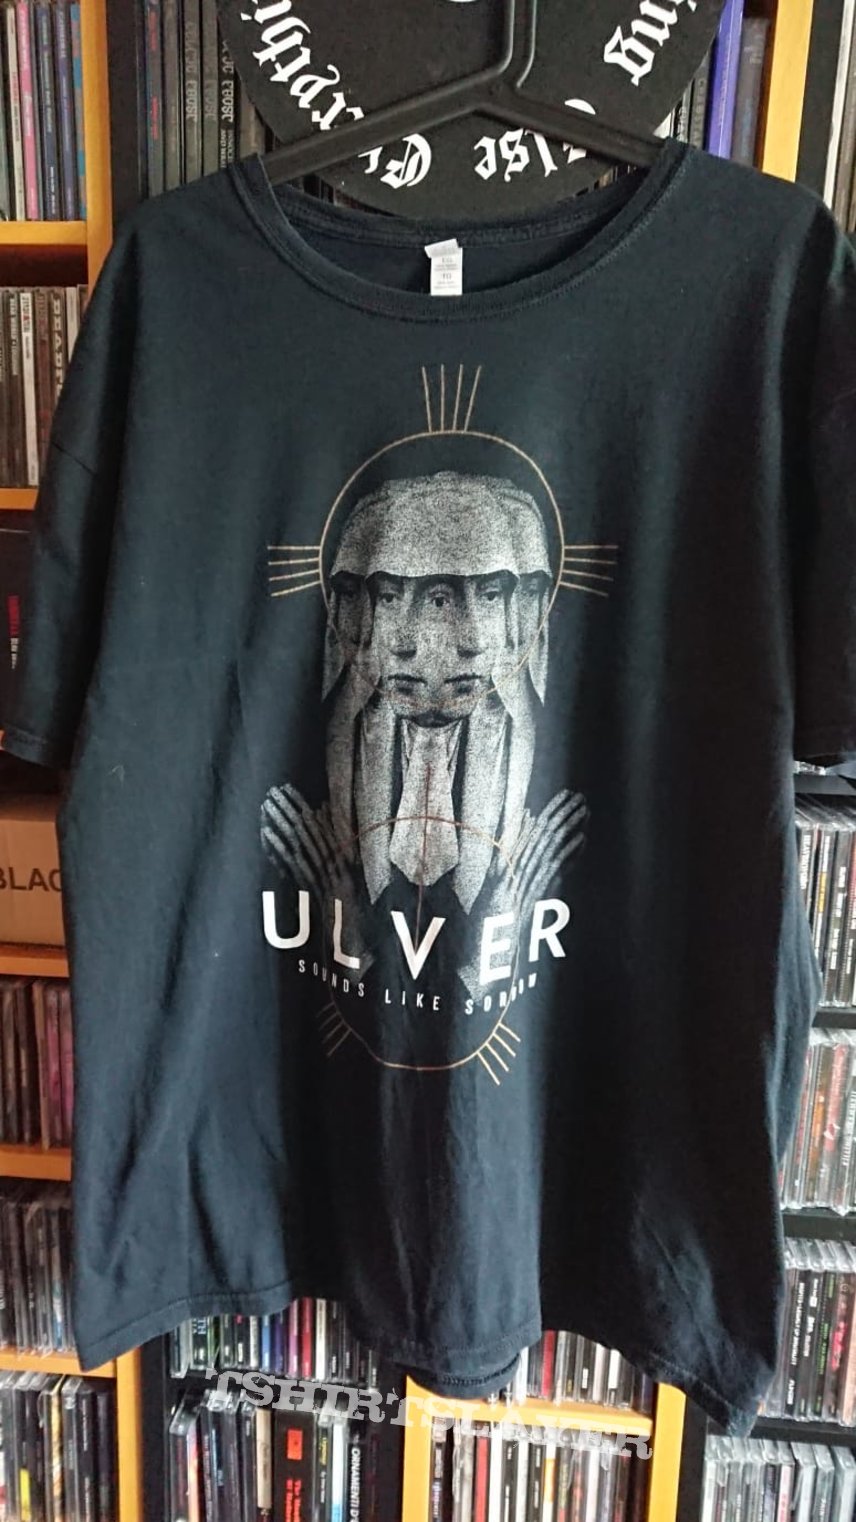 Ulver - Sounds Like Sorrow